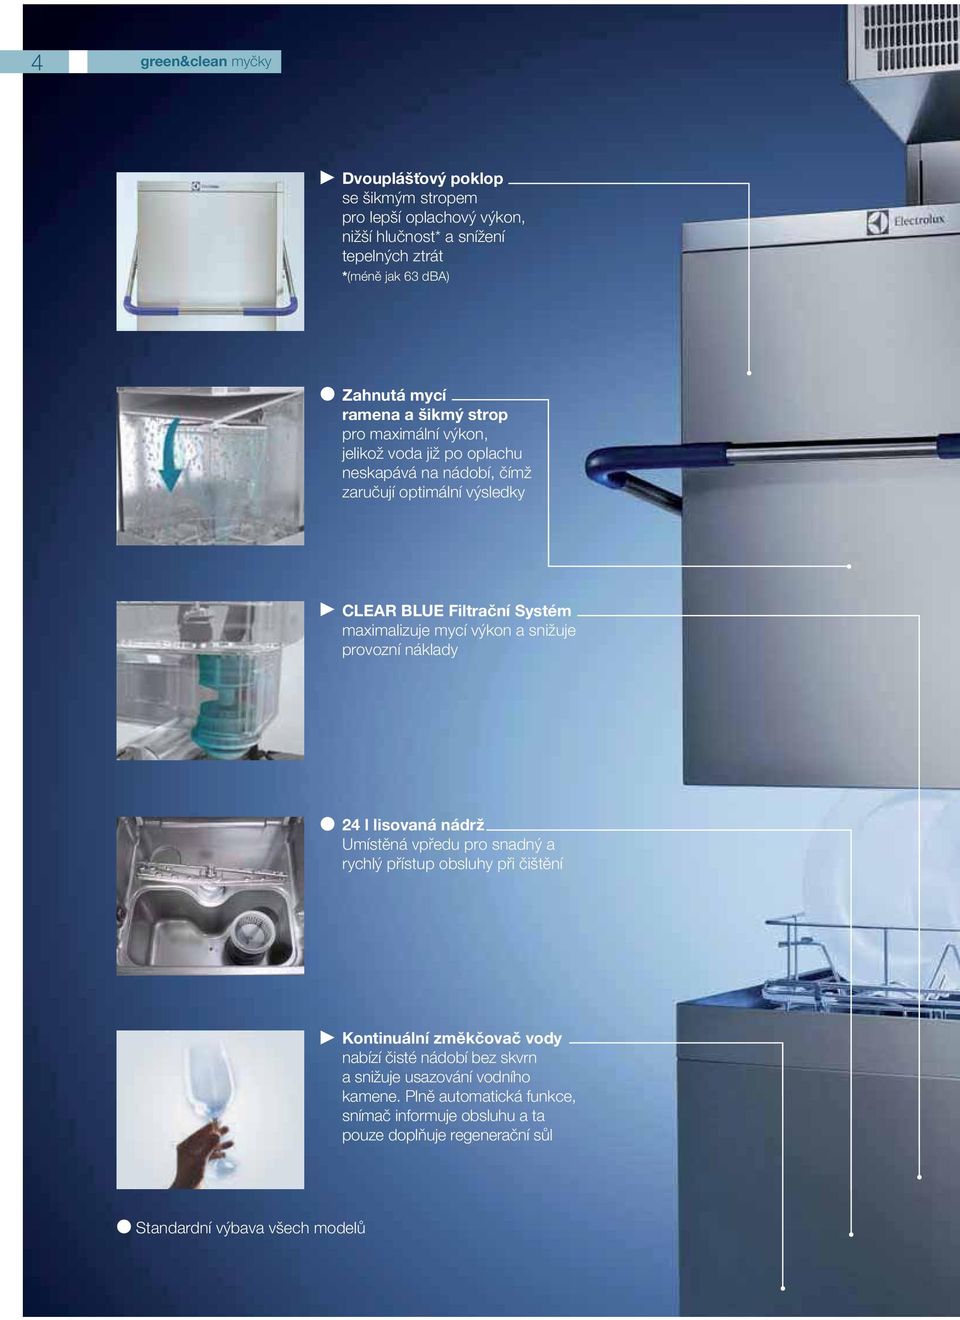 maximalizuje mycí výkon a snižuje provozní náklady 24 l lisovaná nádrž Umístěná vpředu pro snadný a rychlý přístup obsluhy při čištění Kontinuální změkčovač vody